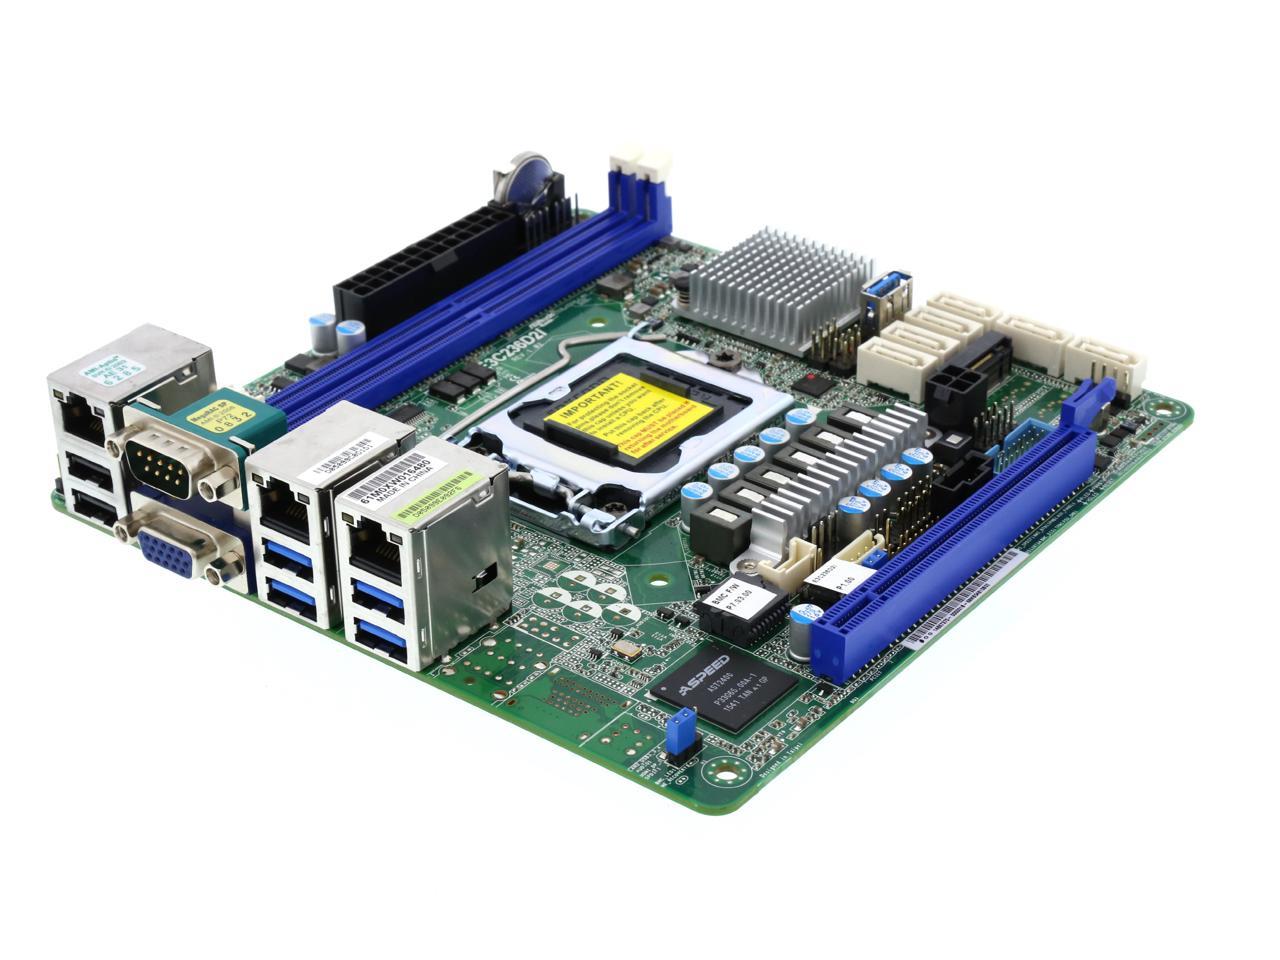 ASRock Rack E3C236D2I Mini ITX Server Motherboard LGA 1151 Intel C236